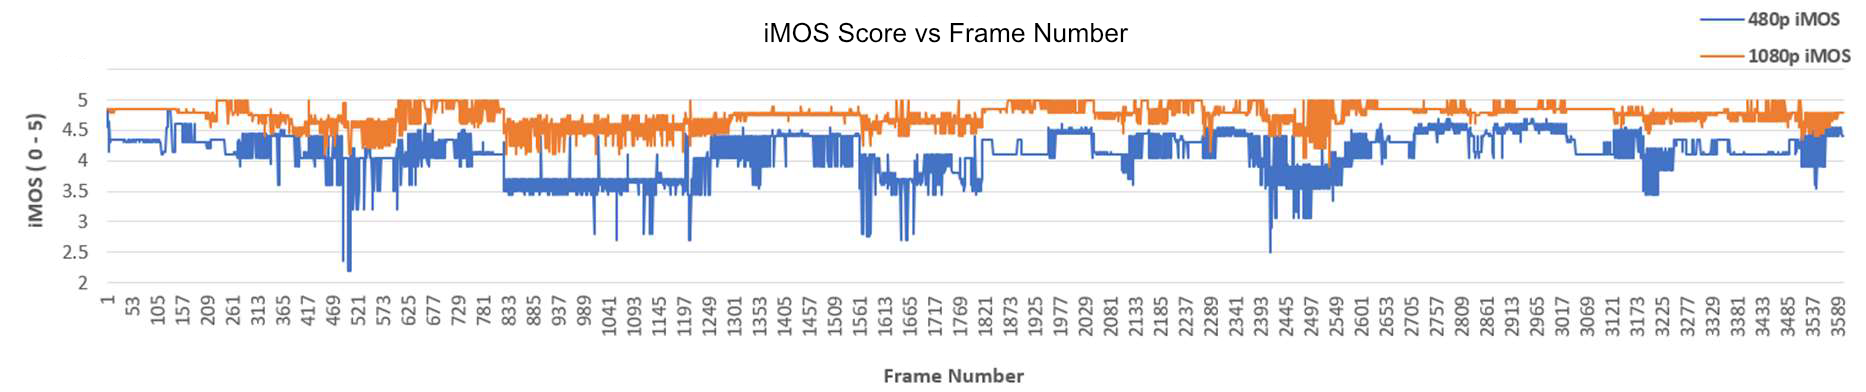 iMOS TestClip Score Plot